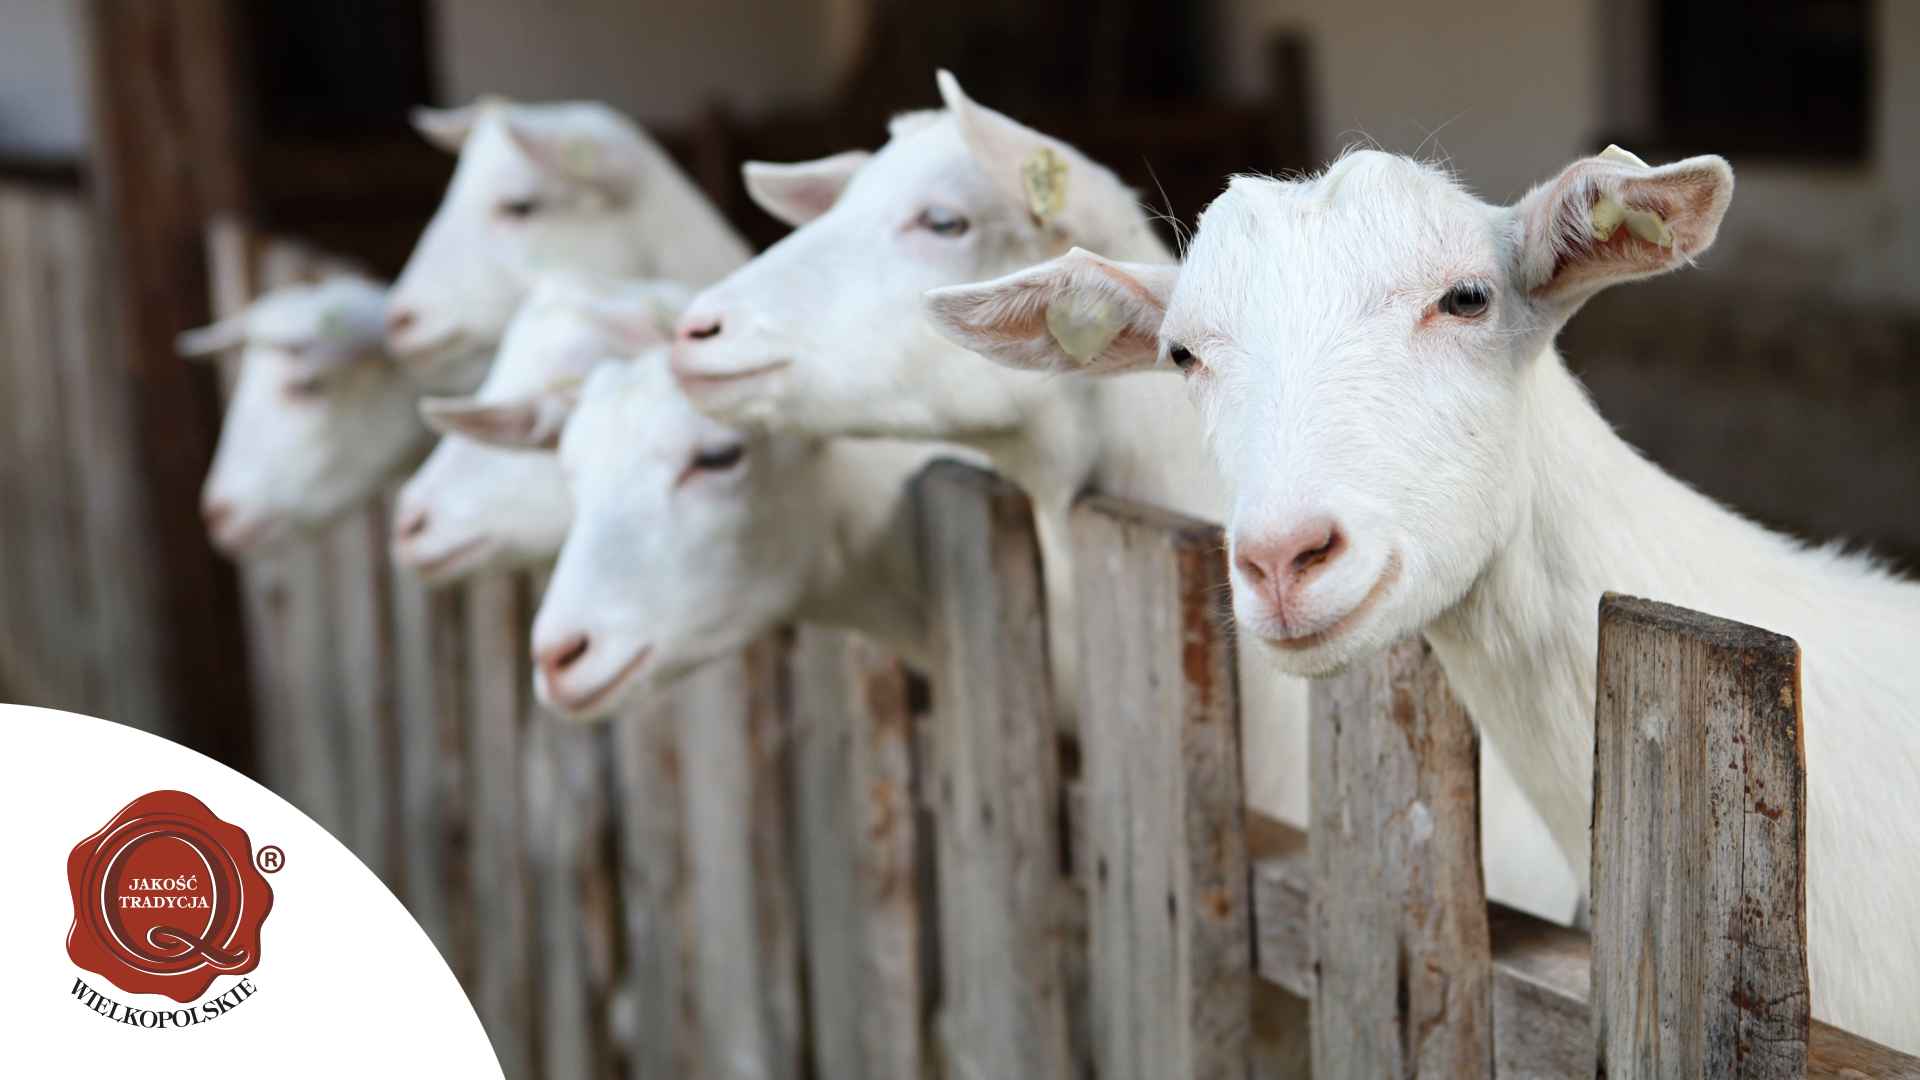 Koleżanki Danki, czyli Danka vs inne kozy w kulturze